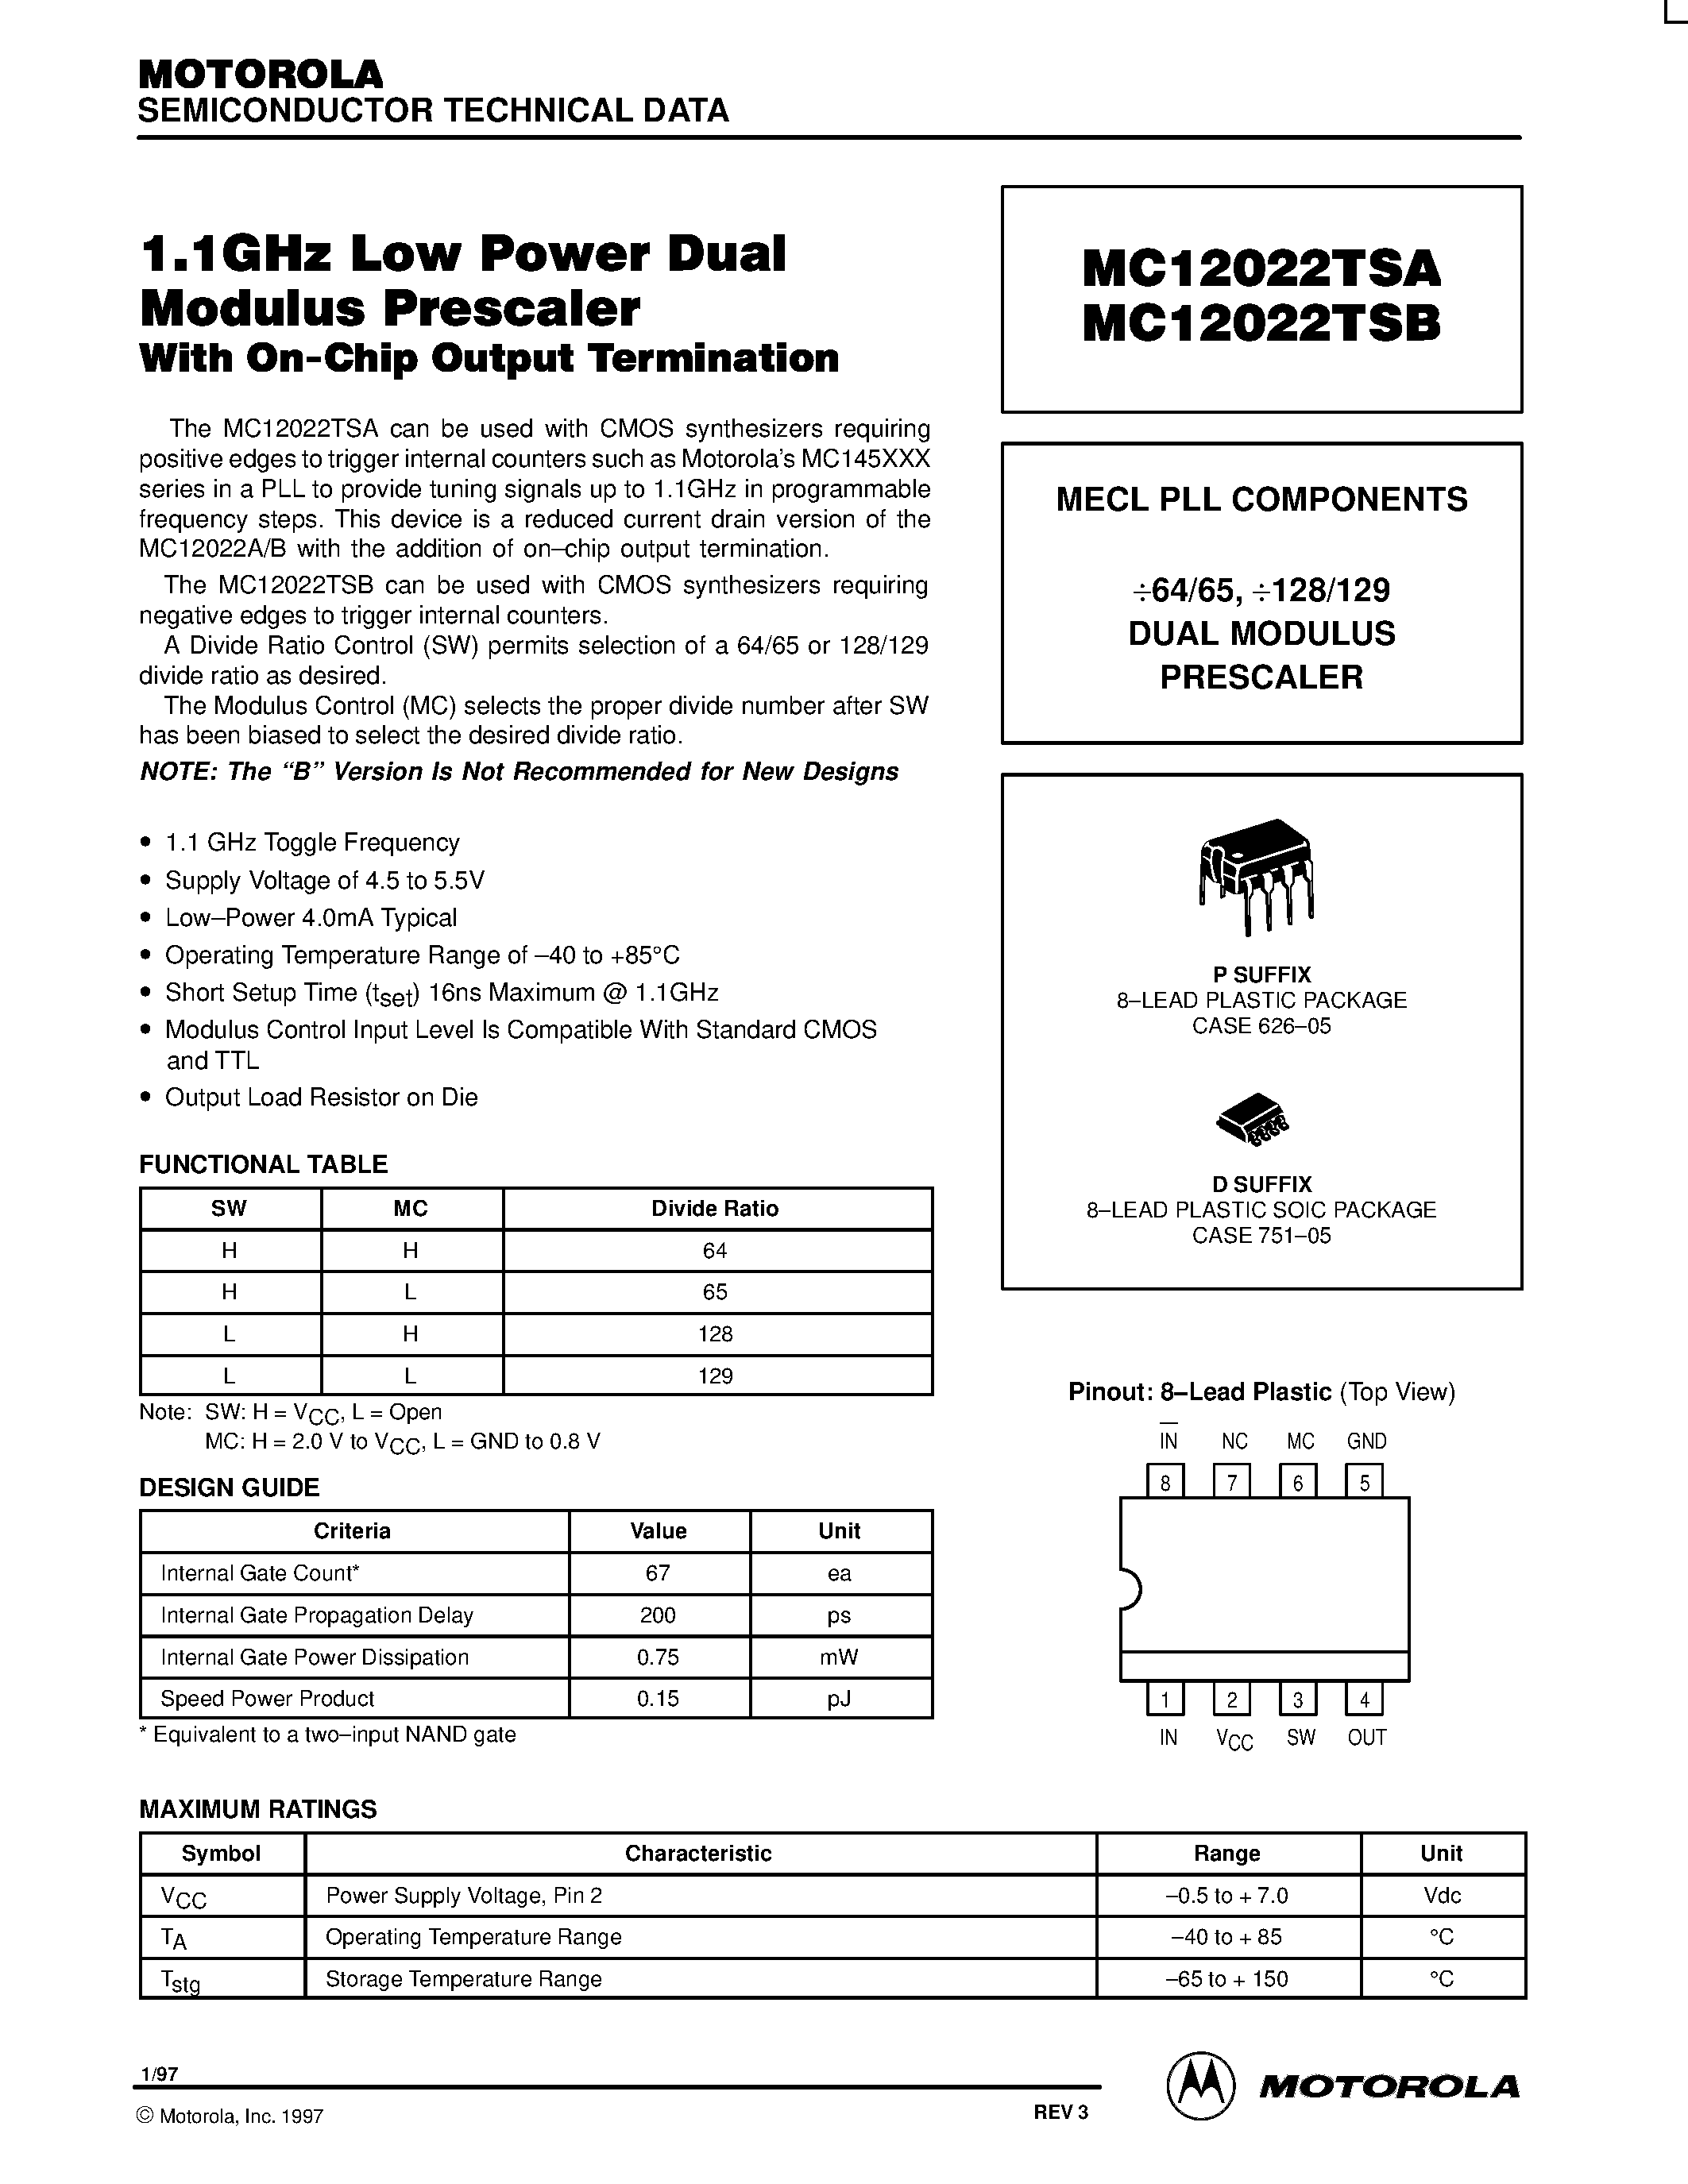 Даташит MC12022TSAD - MECL PLL COMPONENTS 64/65 / 128/129 DUAL MODULUS PRESCALE страница 1